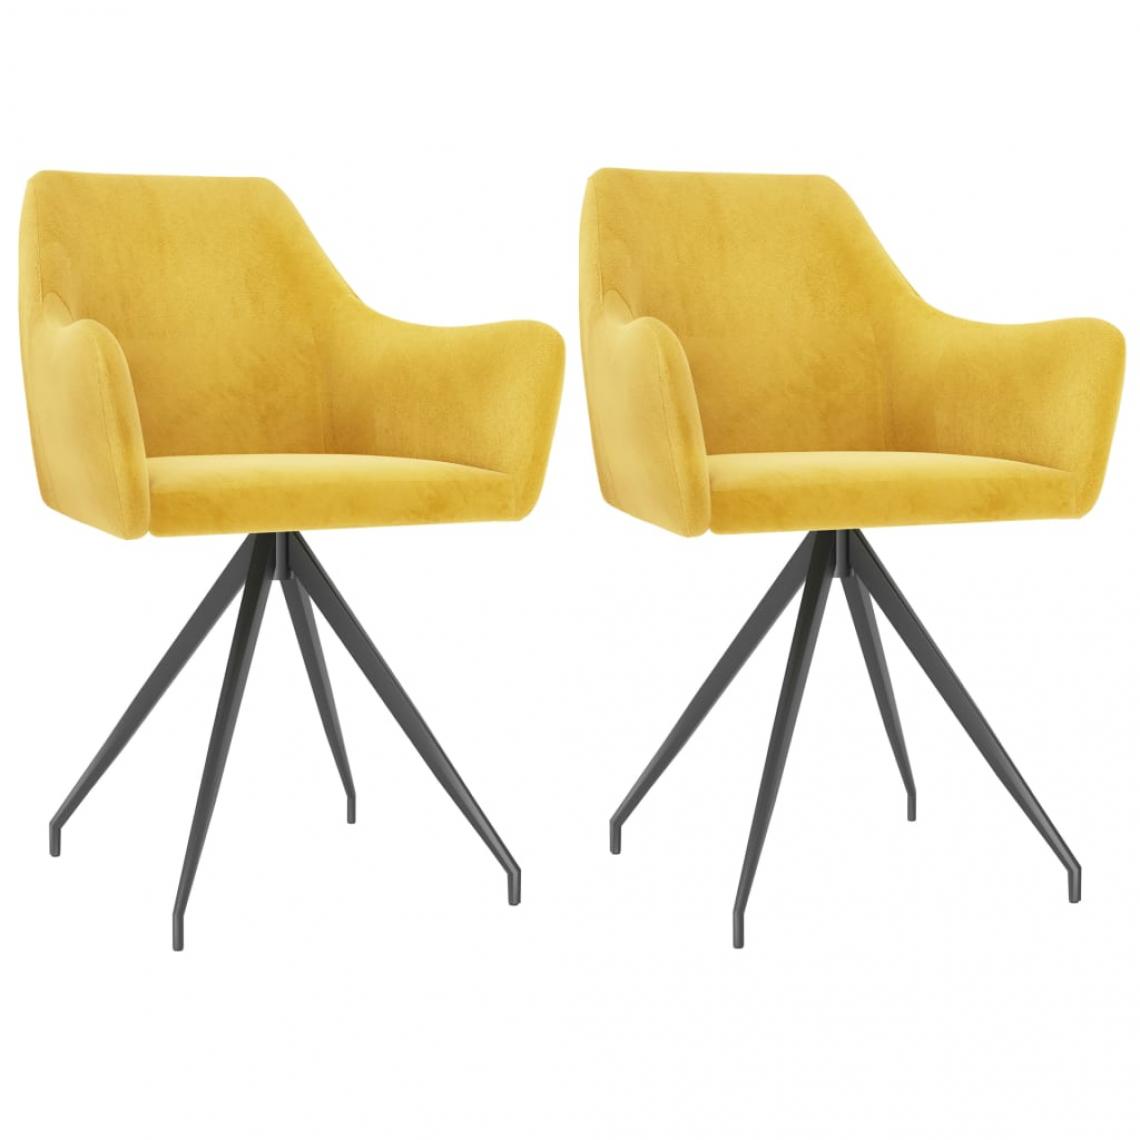 Decoshop26 - Lot de 2 chaises de salle à manger cuisine design moderne velours jaune CDS020663 - Chaises